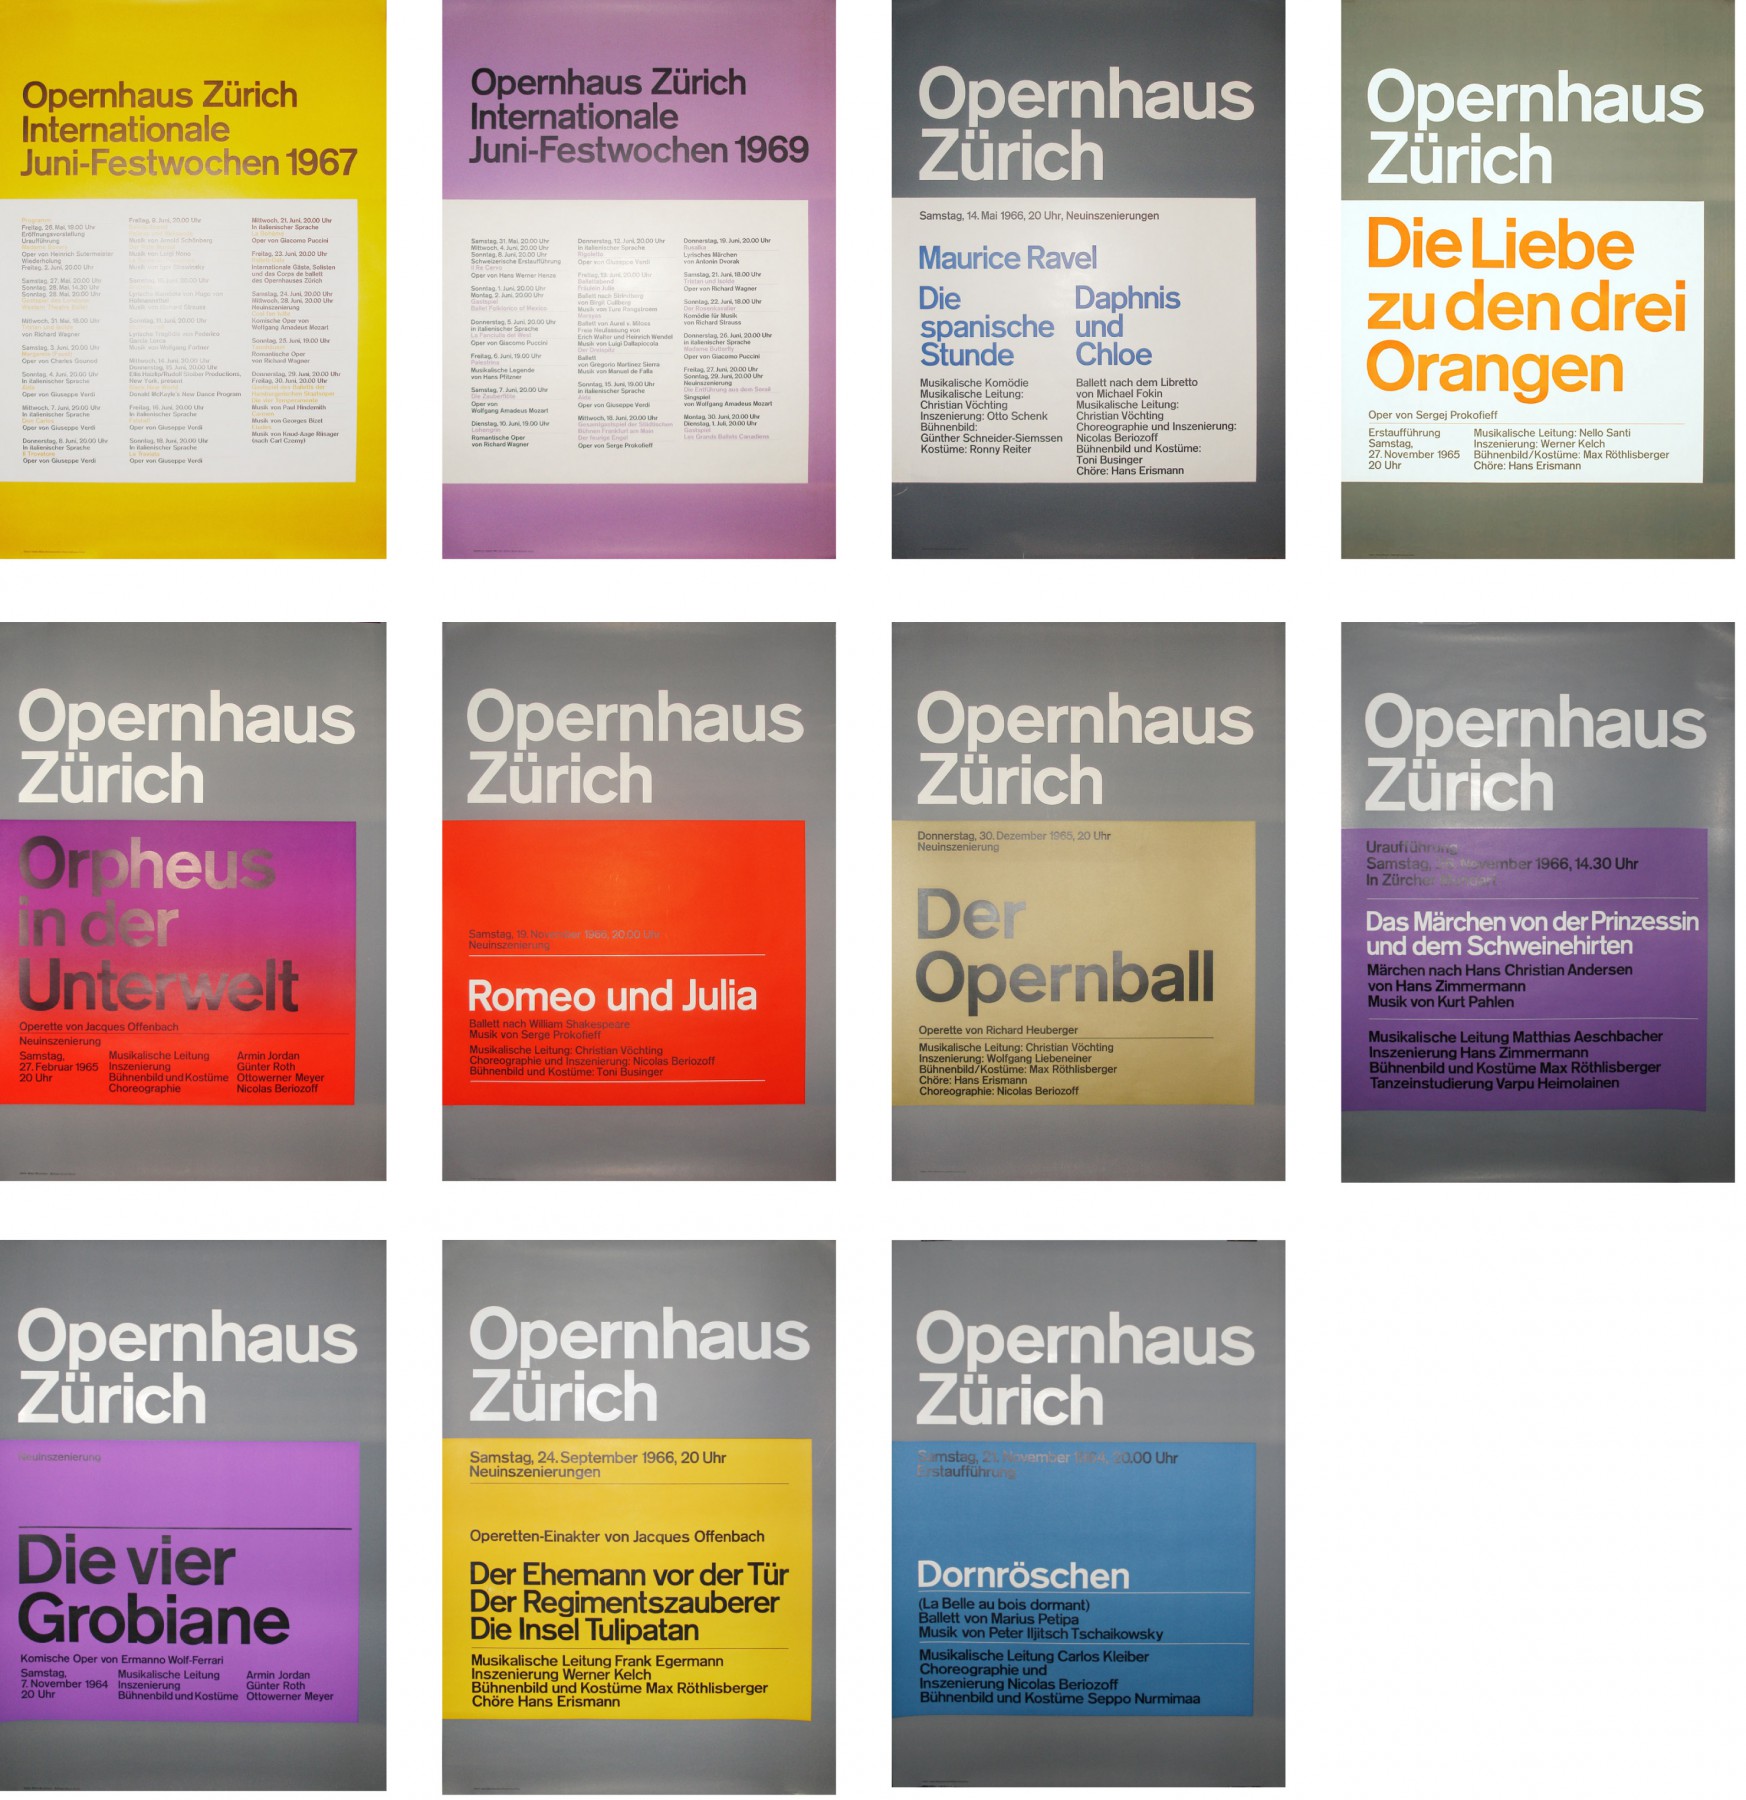 brockmann-openhaus-Zurich-posters